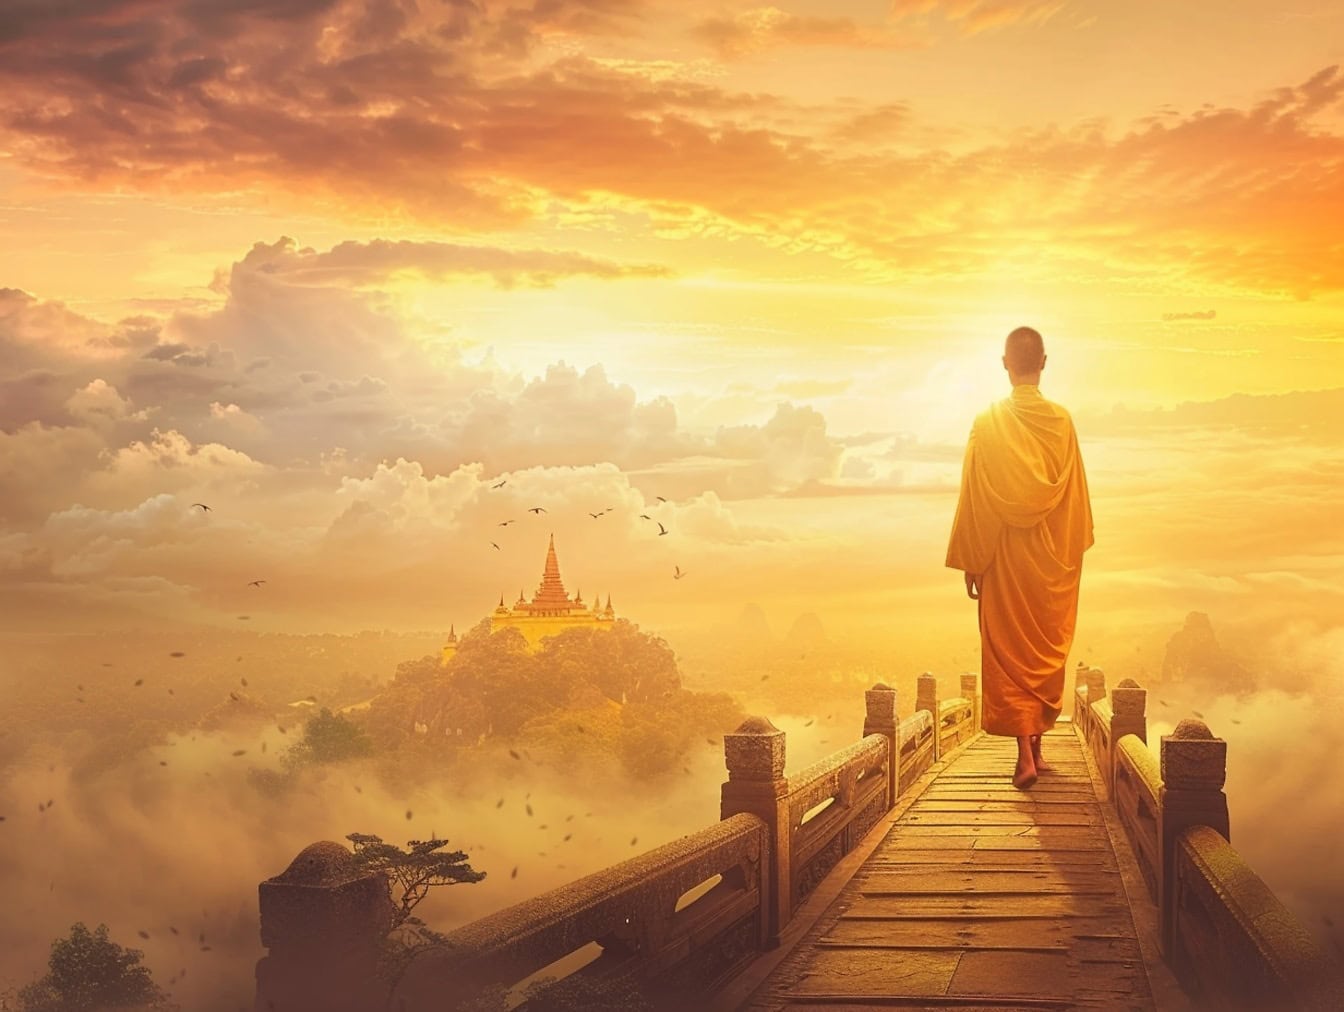 Buddhistický šaolinský mnich kráčející po lávce pro pěší v oblacích při západu slunce, ilustrace klidu a míru na cestě do nebe